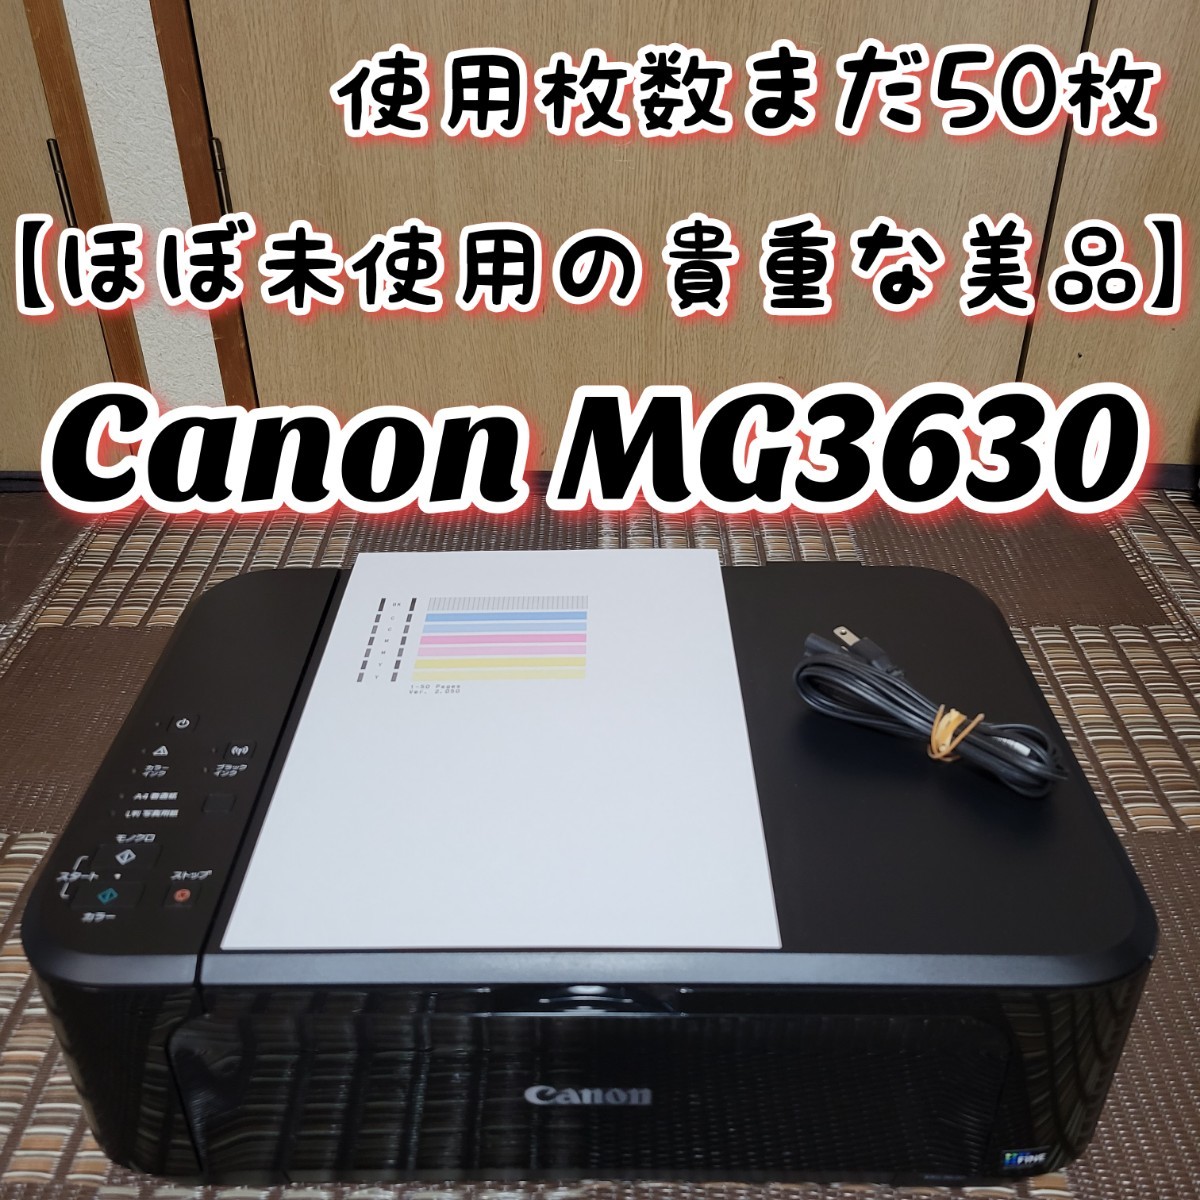 ほぼ未使用の貴重な美品】 Canon キヤノン PIXUS MG3630